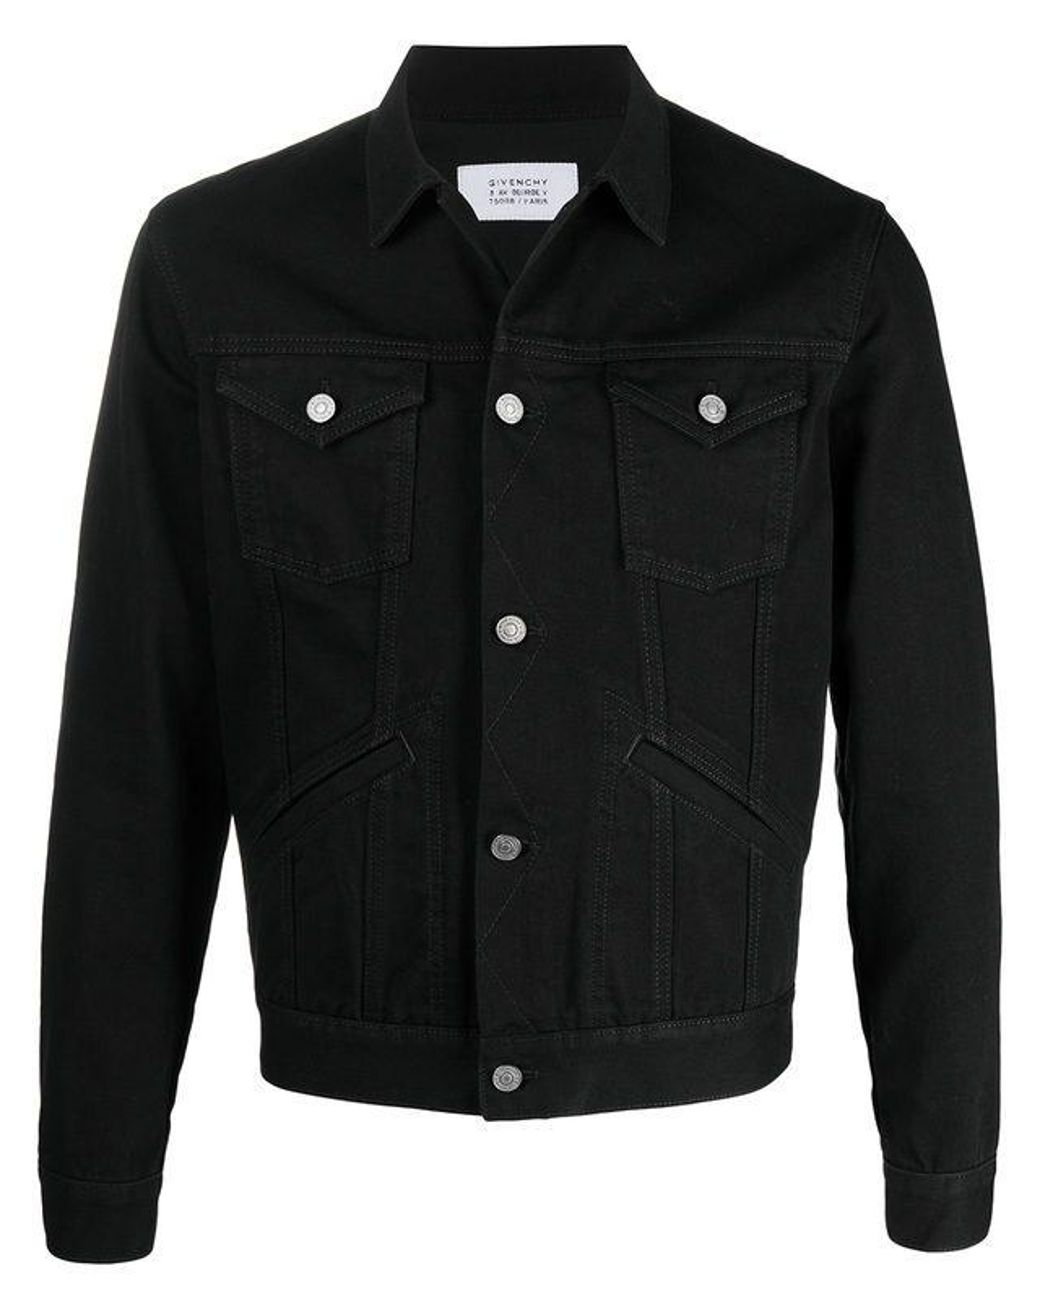 Givenchy Denim Jacket in Black for Men - Lyst